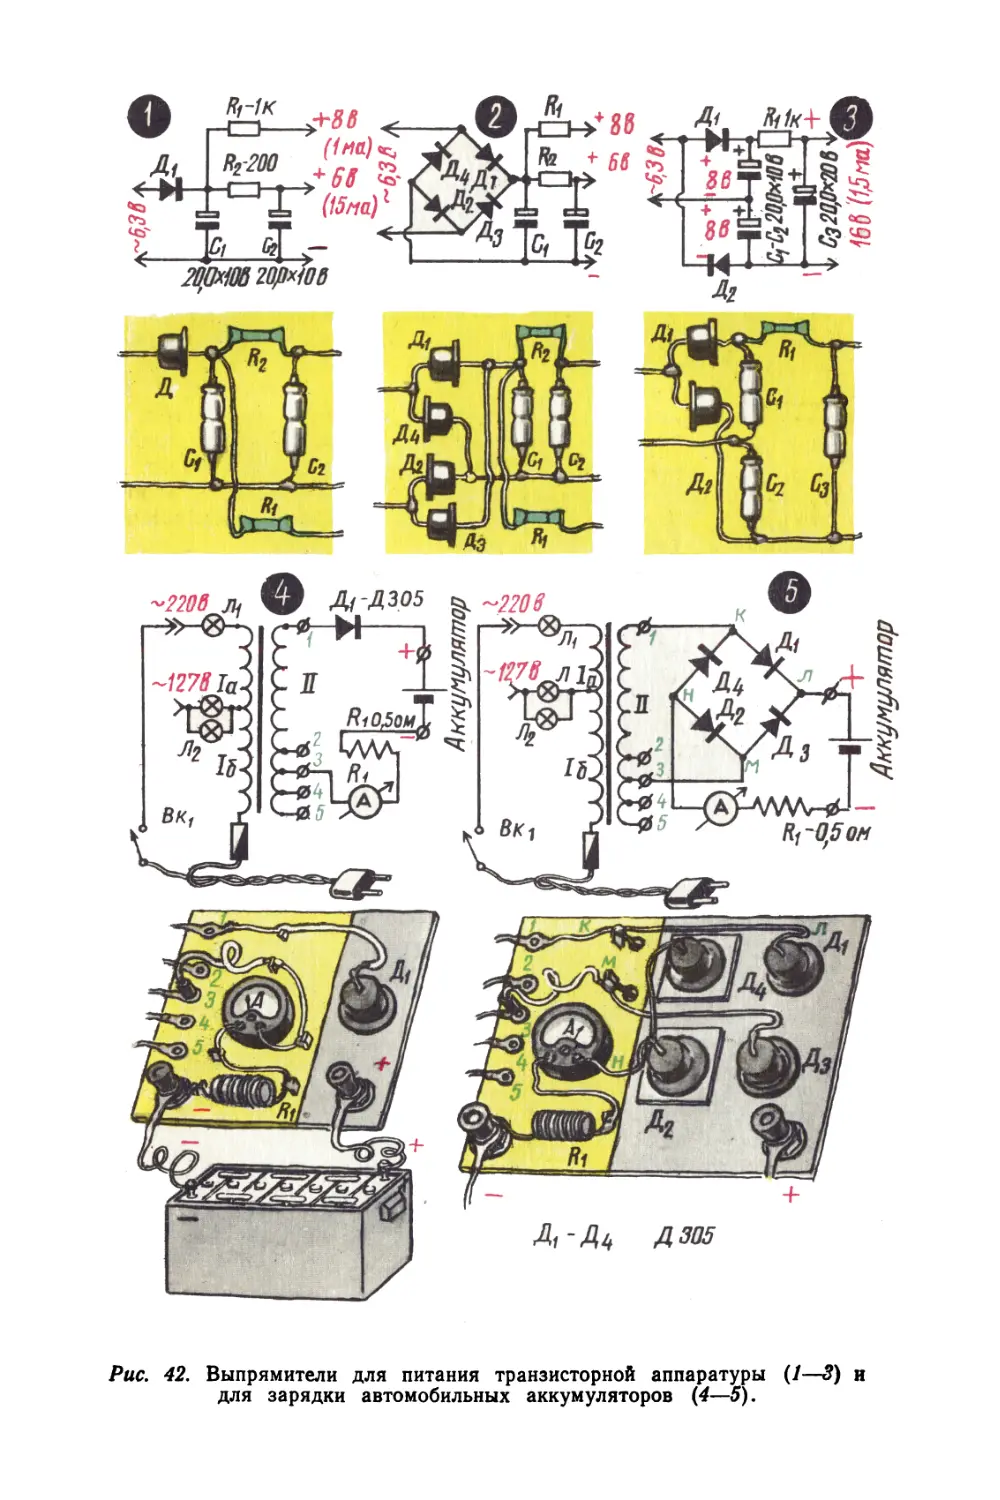 Цветные вкладки
Рис. 42 Выпрямители для питания транзисторной аппаратуры и для зарядки автомобильных аккумуляторов